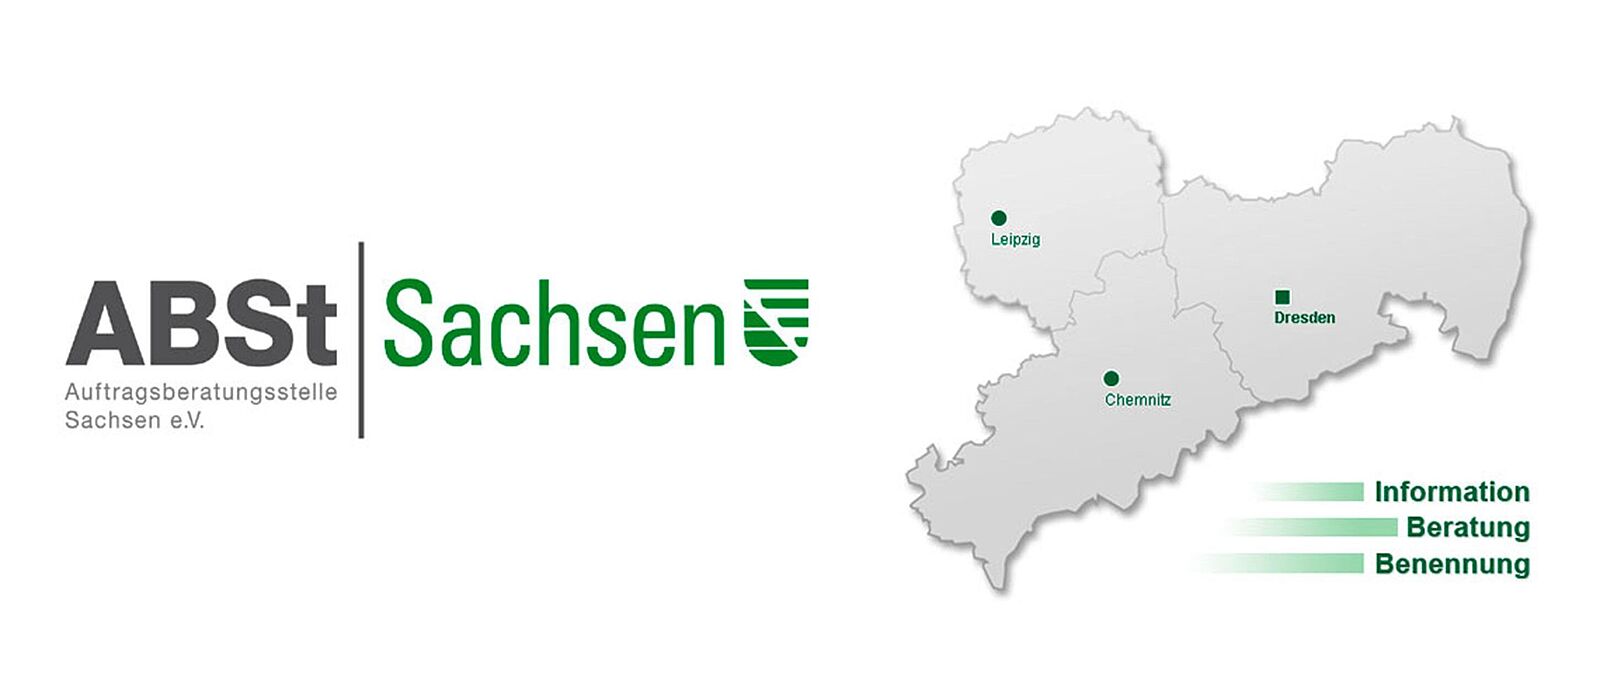 Logo der Auftragsberatungsstelle Sachsen e.V  mit der Karte der Landesdirektion Sachsen, darauf markiert die Standorte Chemnitz, Dresden, Leipzig.